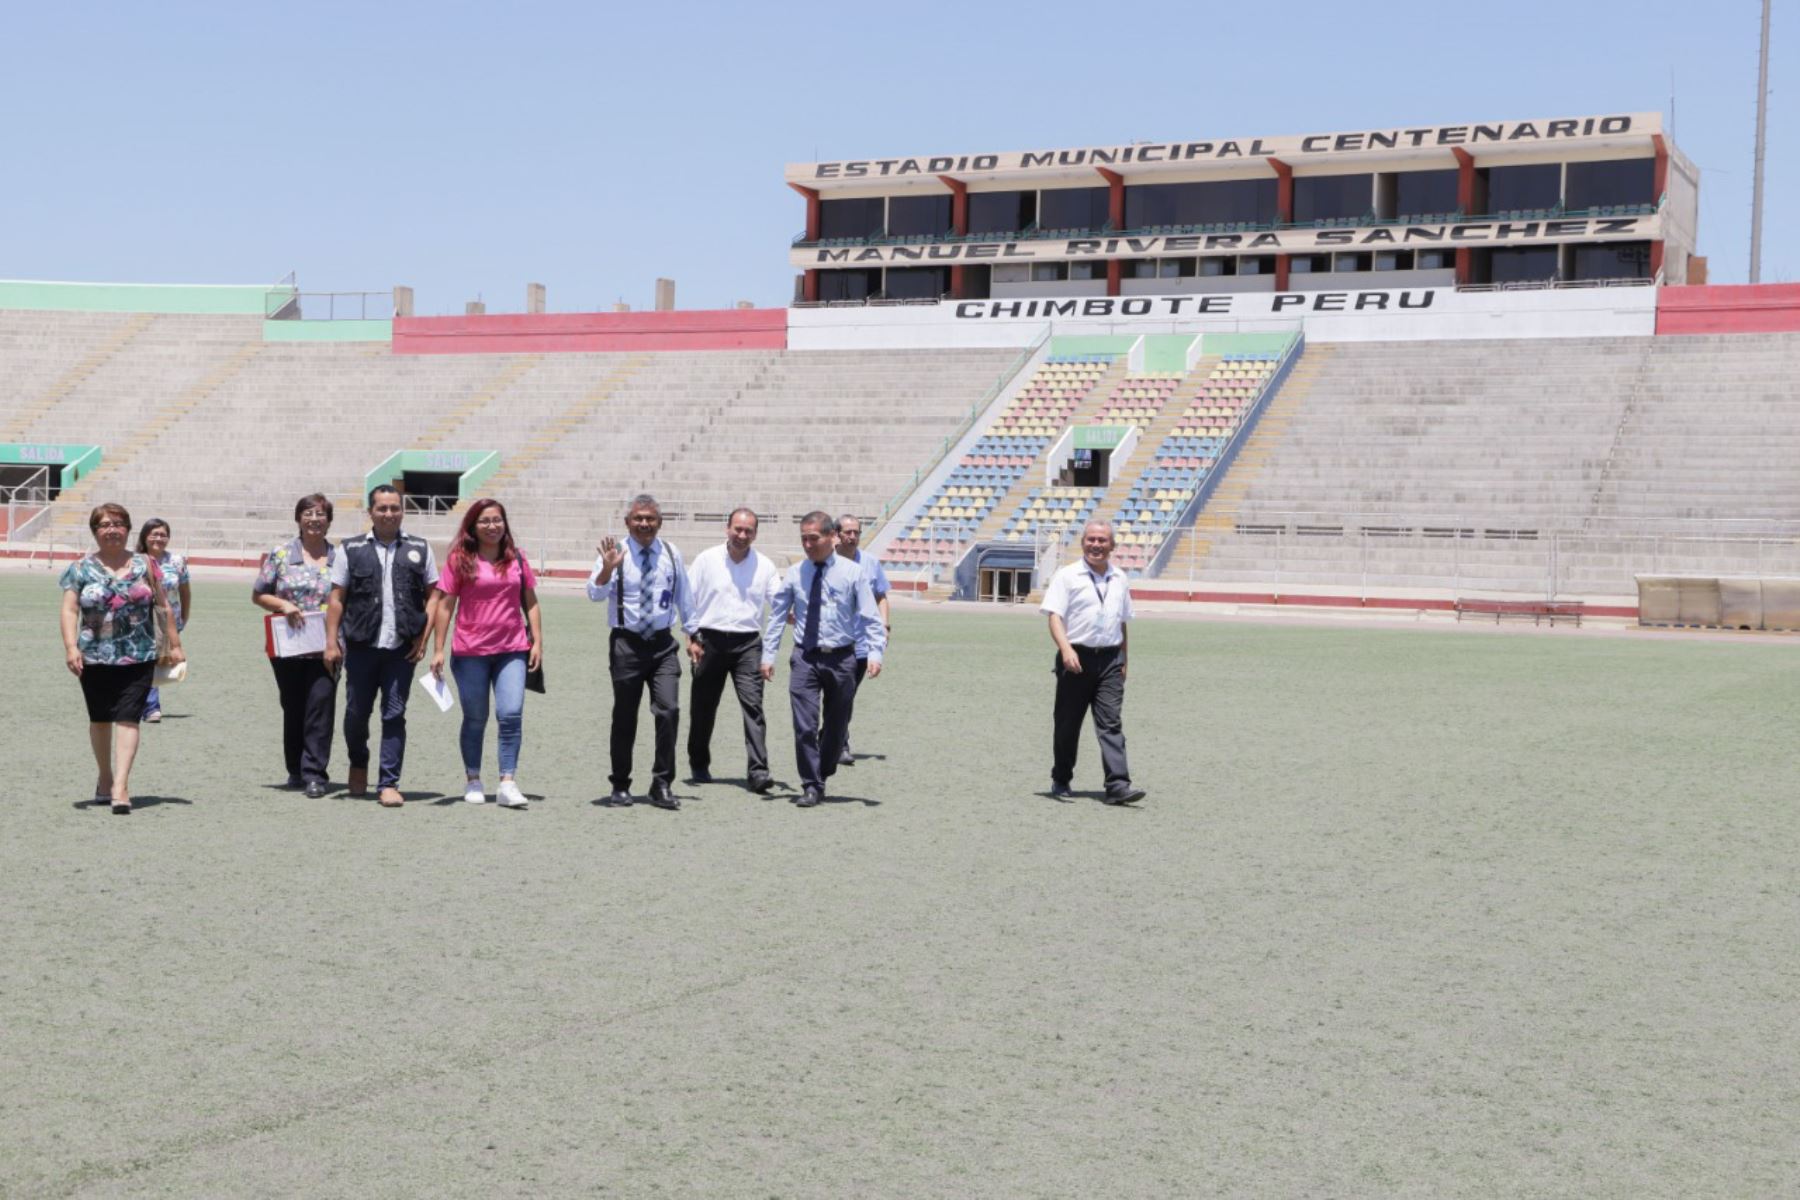 En el estadio centenario Manuel Rivera Sánchez de Chimbote (Áncash) funcionará un área común de triaje.